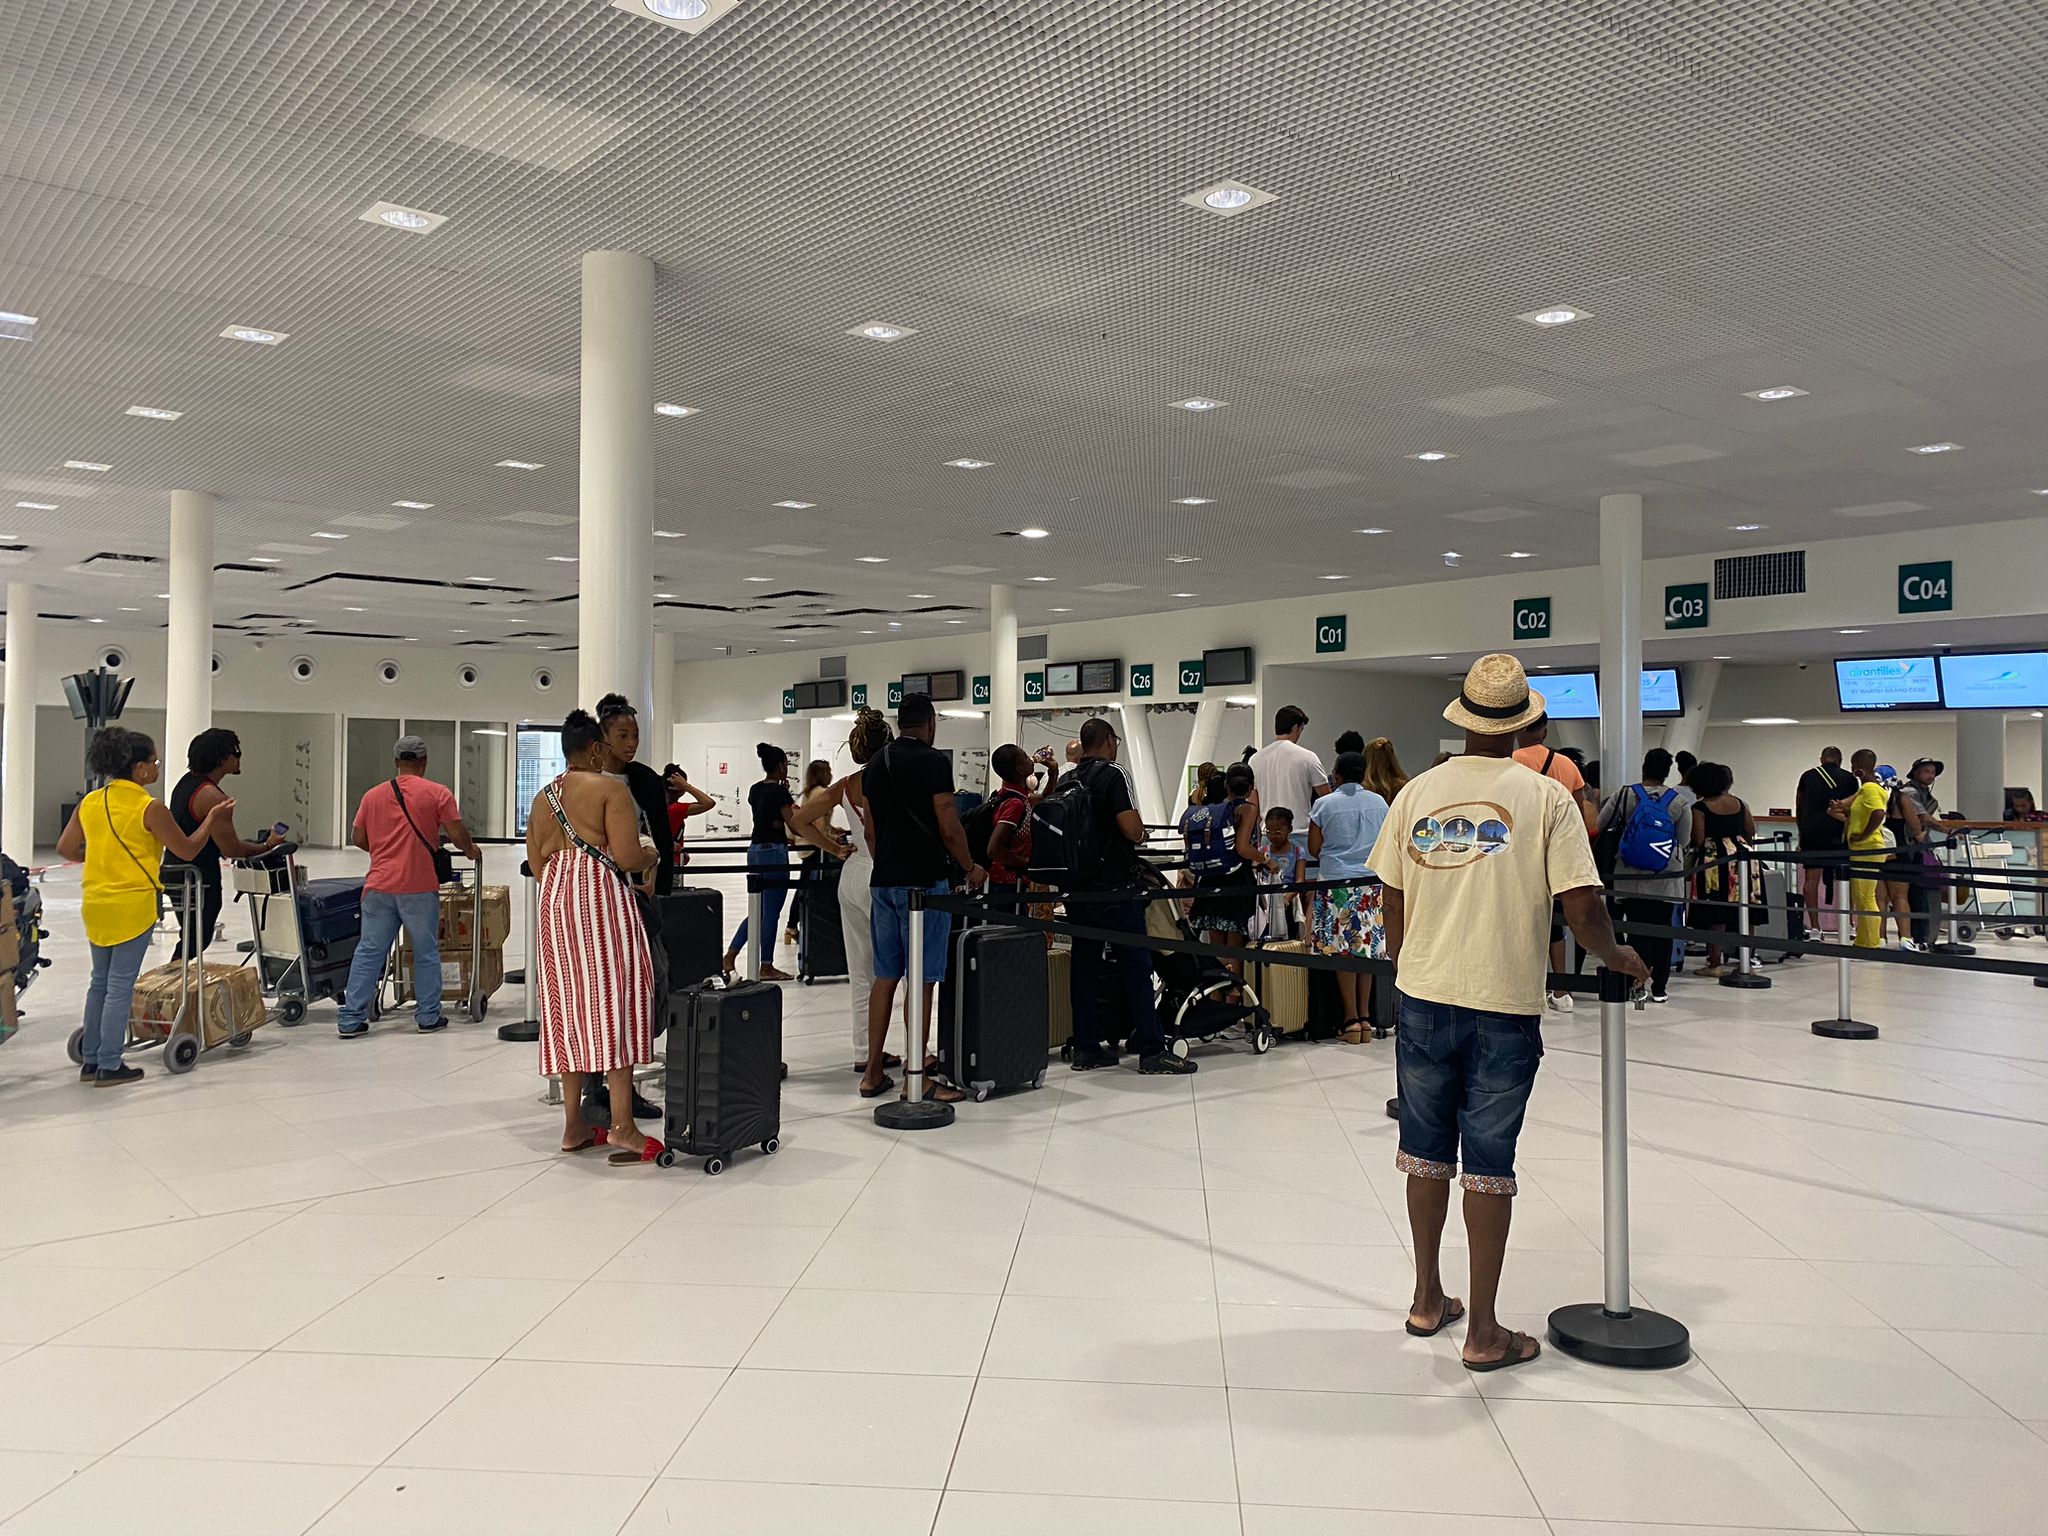     Air Antilles : la reprise ne se fait pas sans embuche

